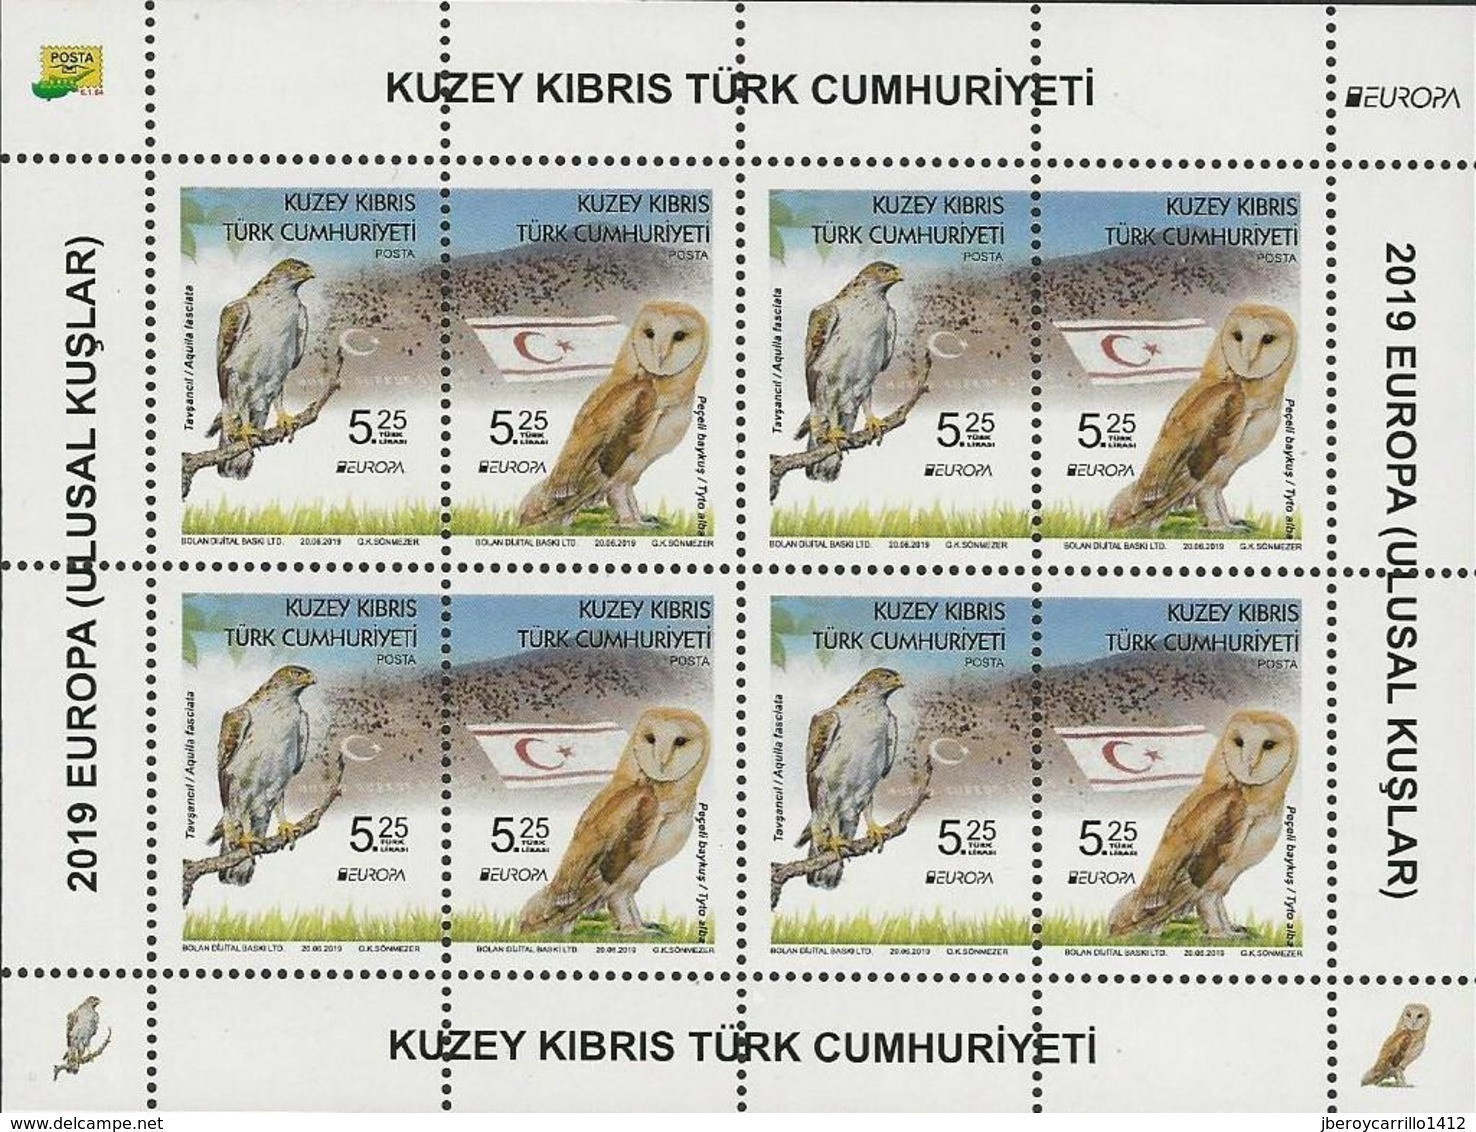 CHIPRE TURCO /TURKISH CYPRUS /TÜRKISCH ZYPERN  -EUROPA 2019 -NATIONAL BIRDS.-"AVES-BIRDS-VÖGEL-OISEAUX"-HOJA BLOQUE-4 - 2019